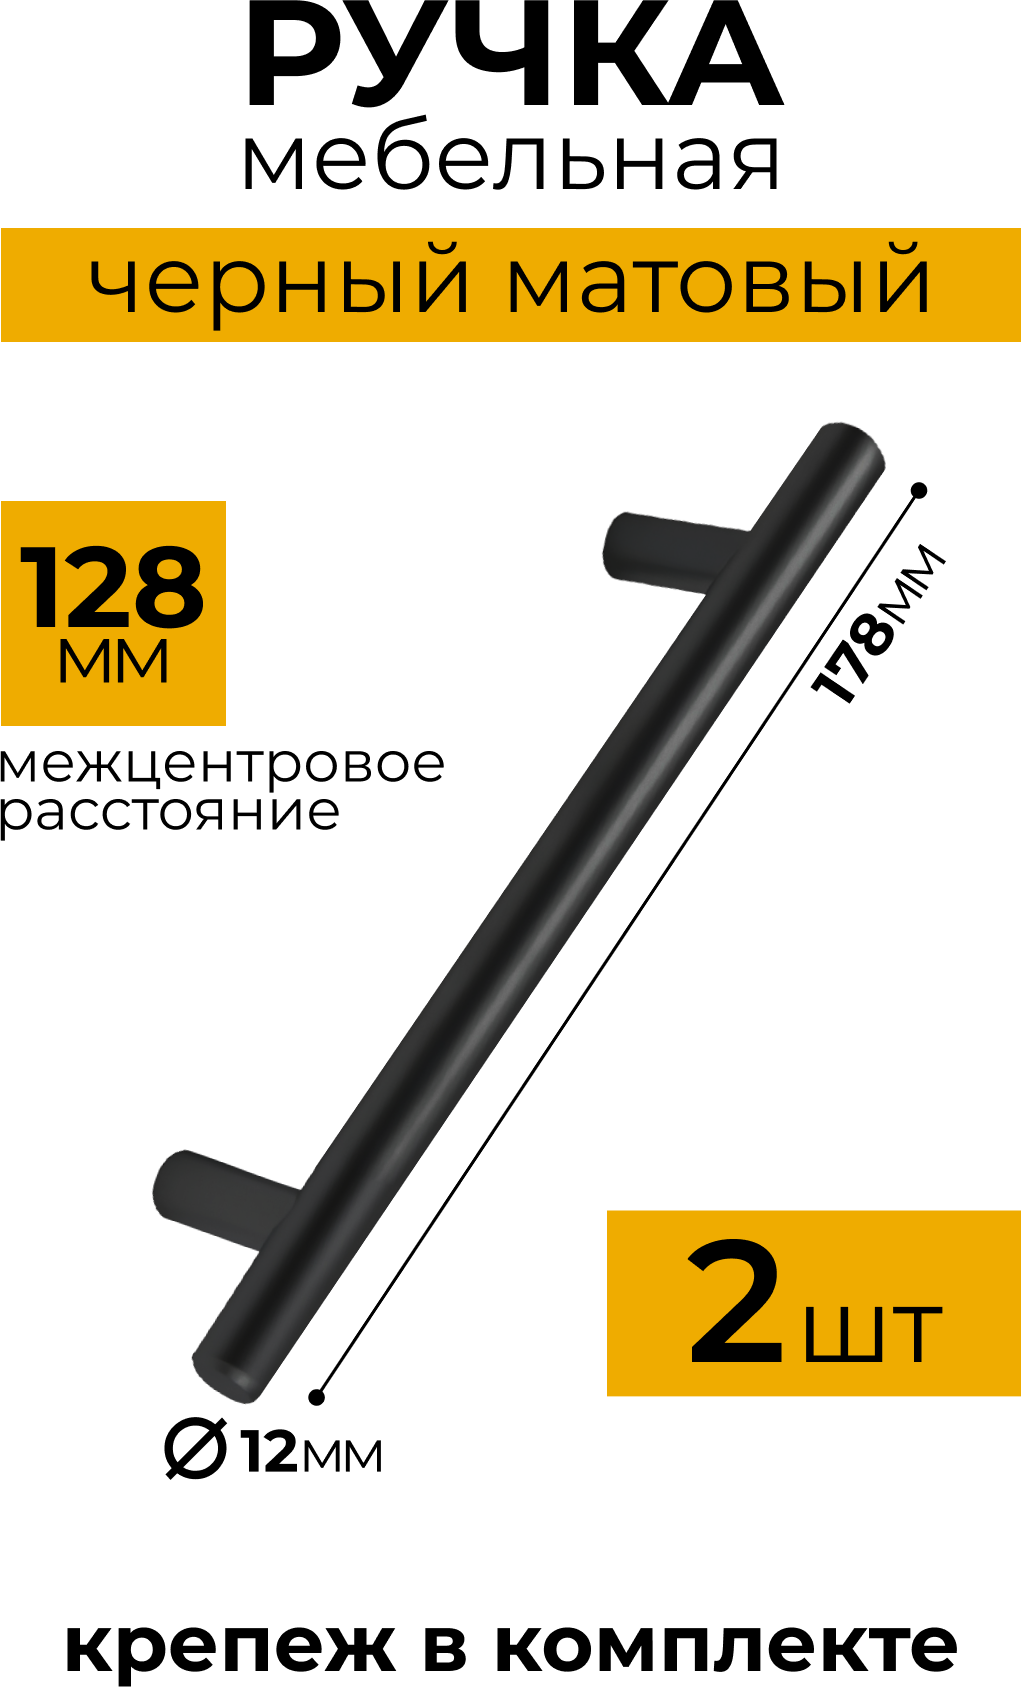 Ручка рейлинг, диаметр 12 мм, 128 мм, матовый черный, комплект 2 шт